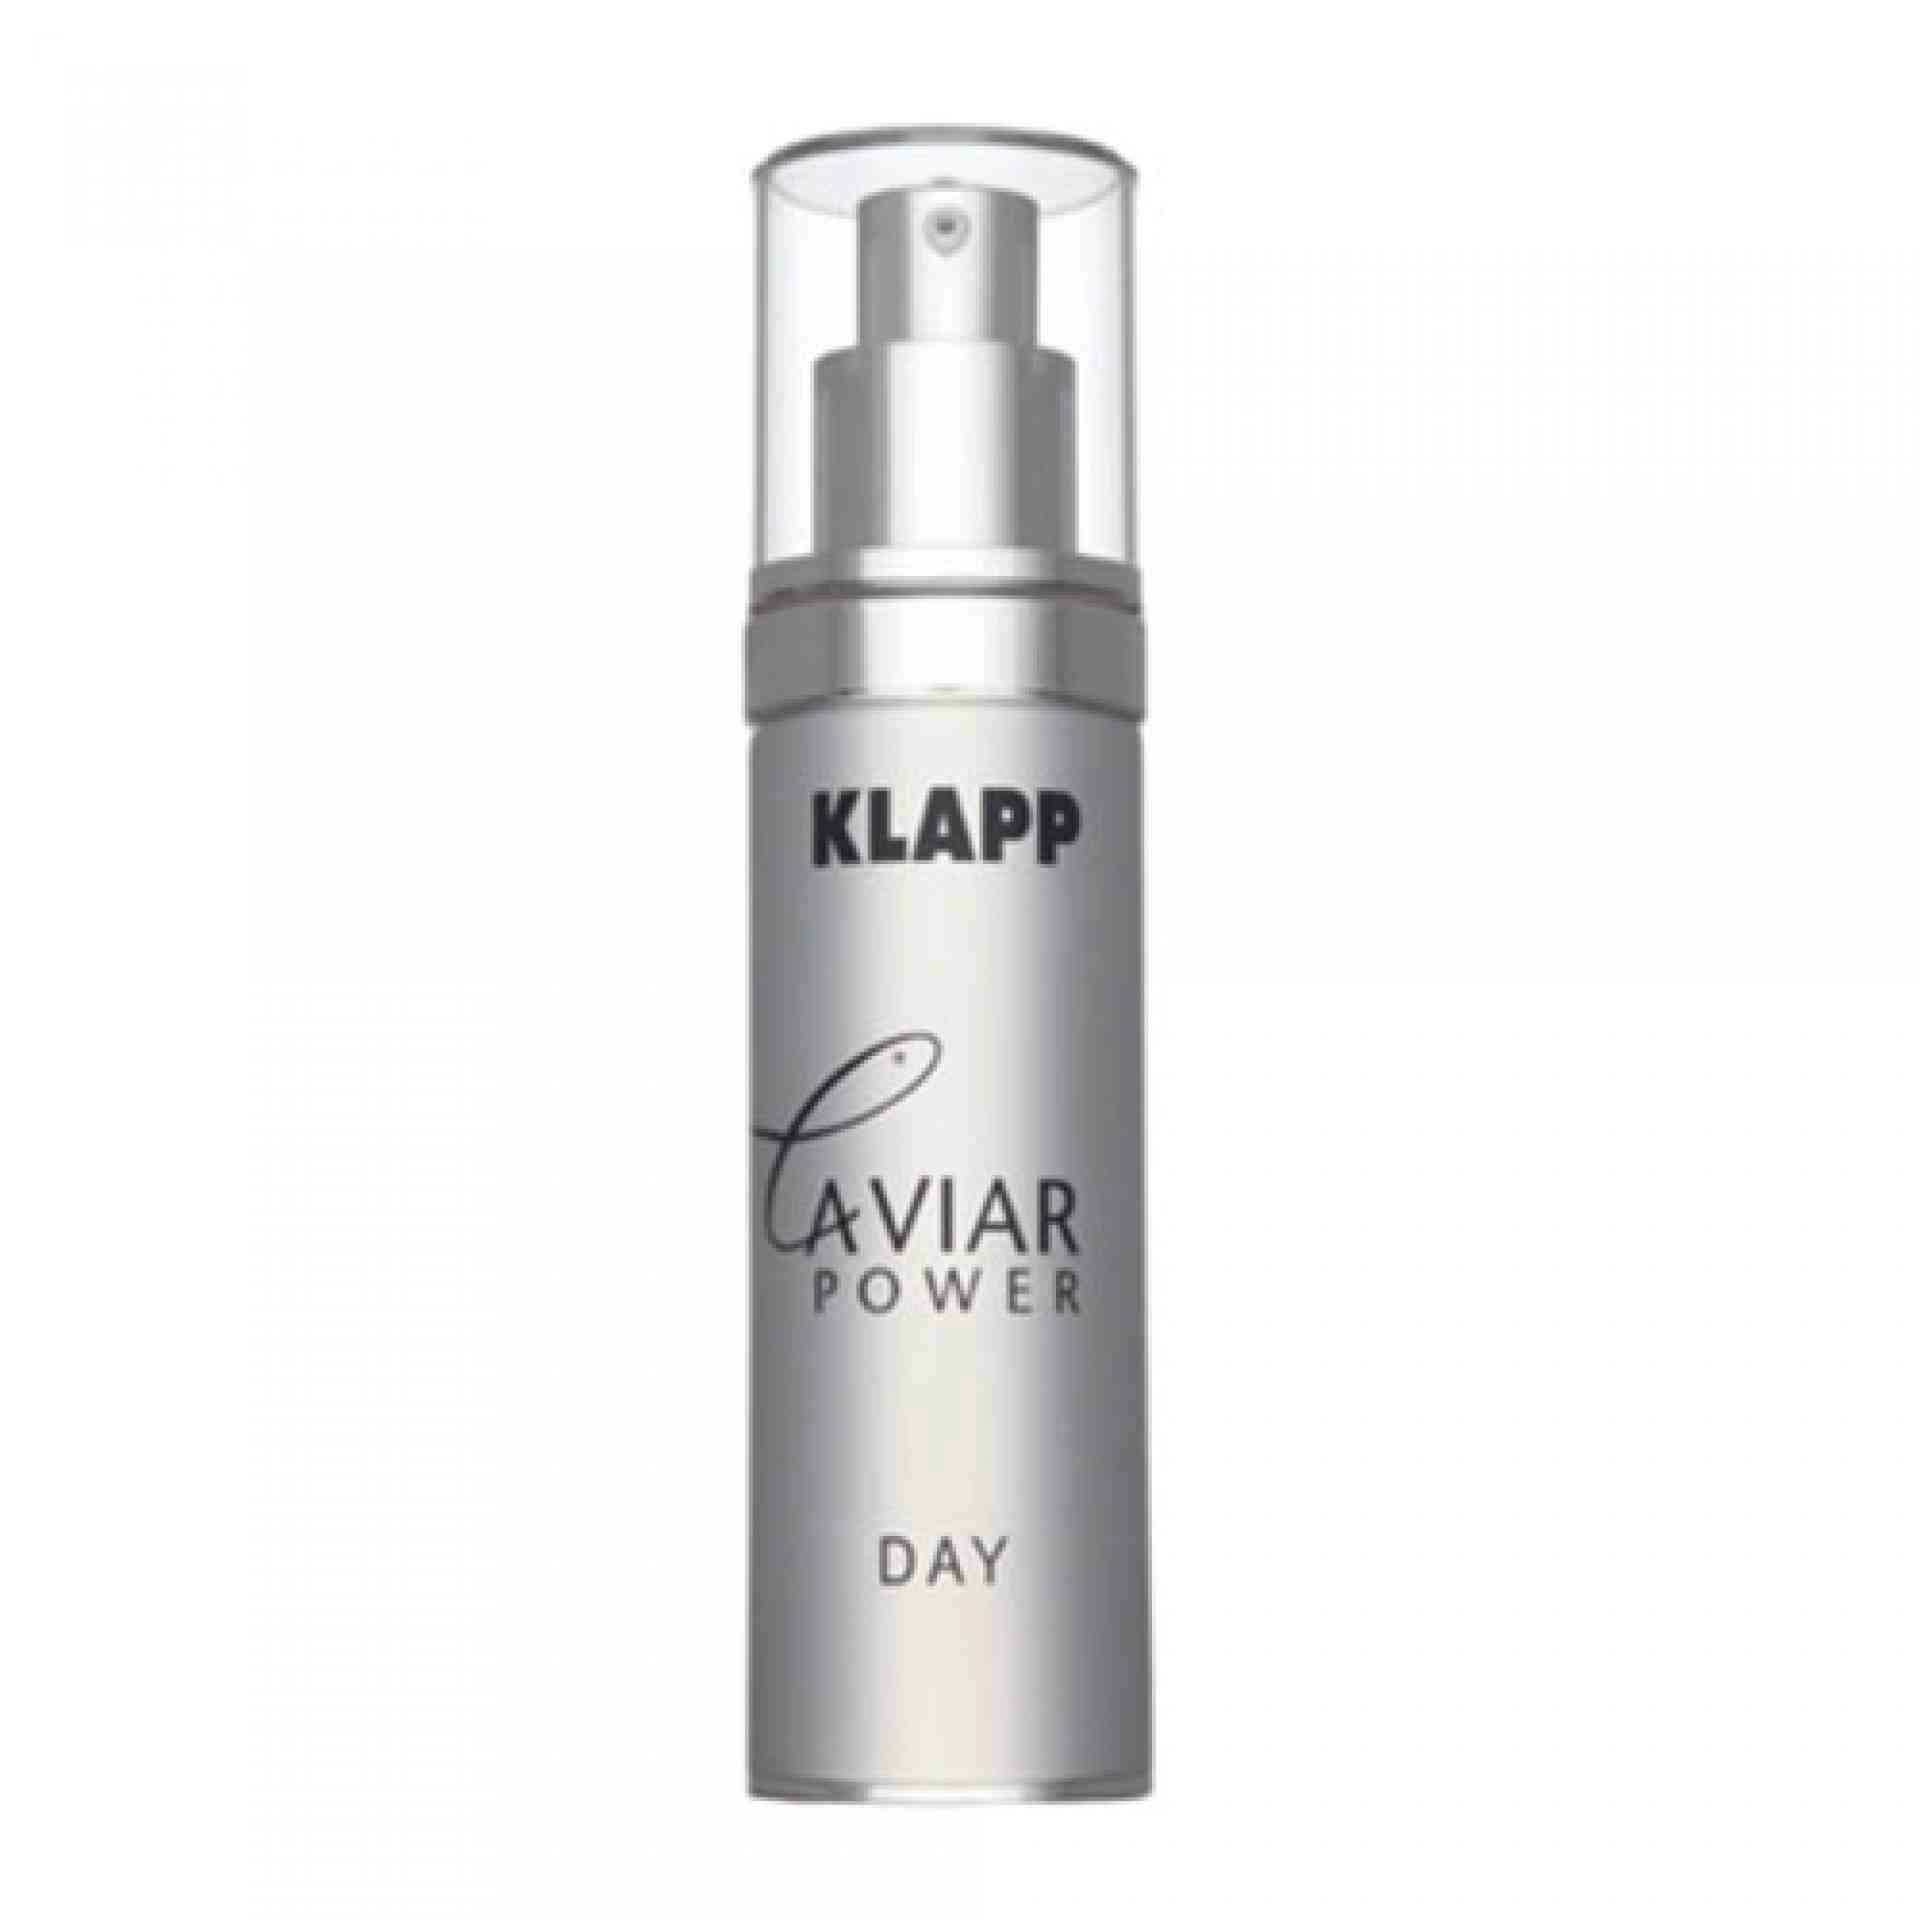 Day | Crema de Día 50 ml - Caviar Power - Klapp ®